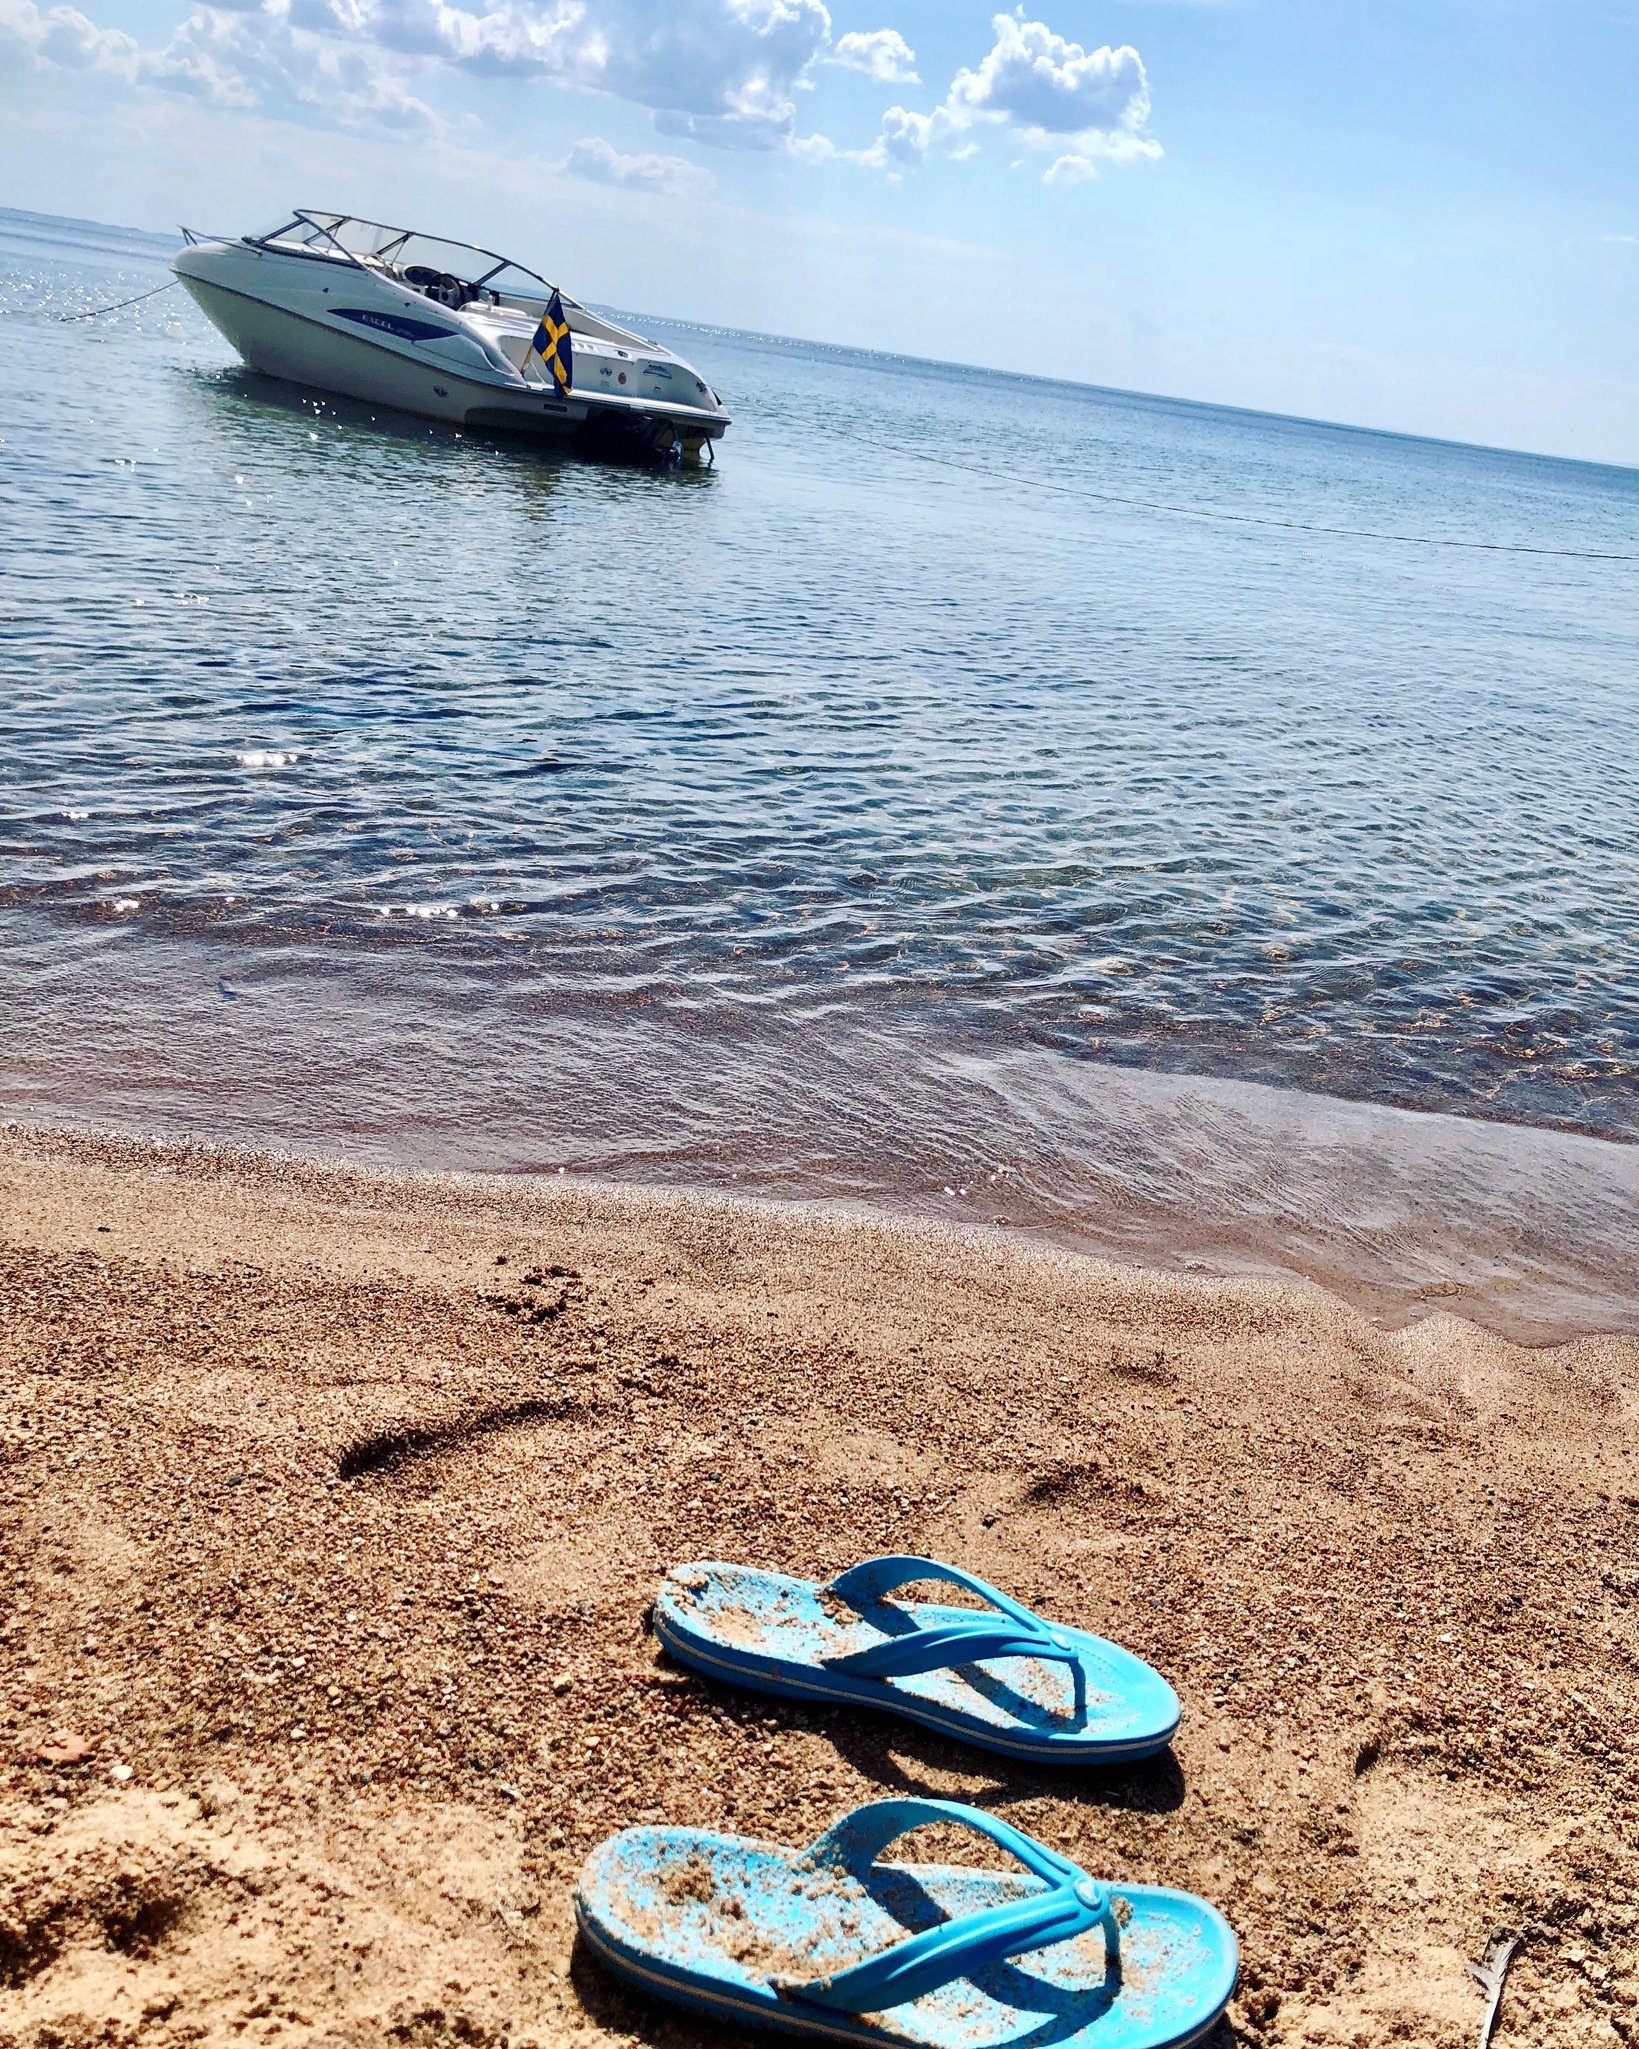 Ett par badtofflor ligger på stranden i vattenbrynet. En båt ligger i vattnet utanför.